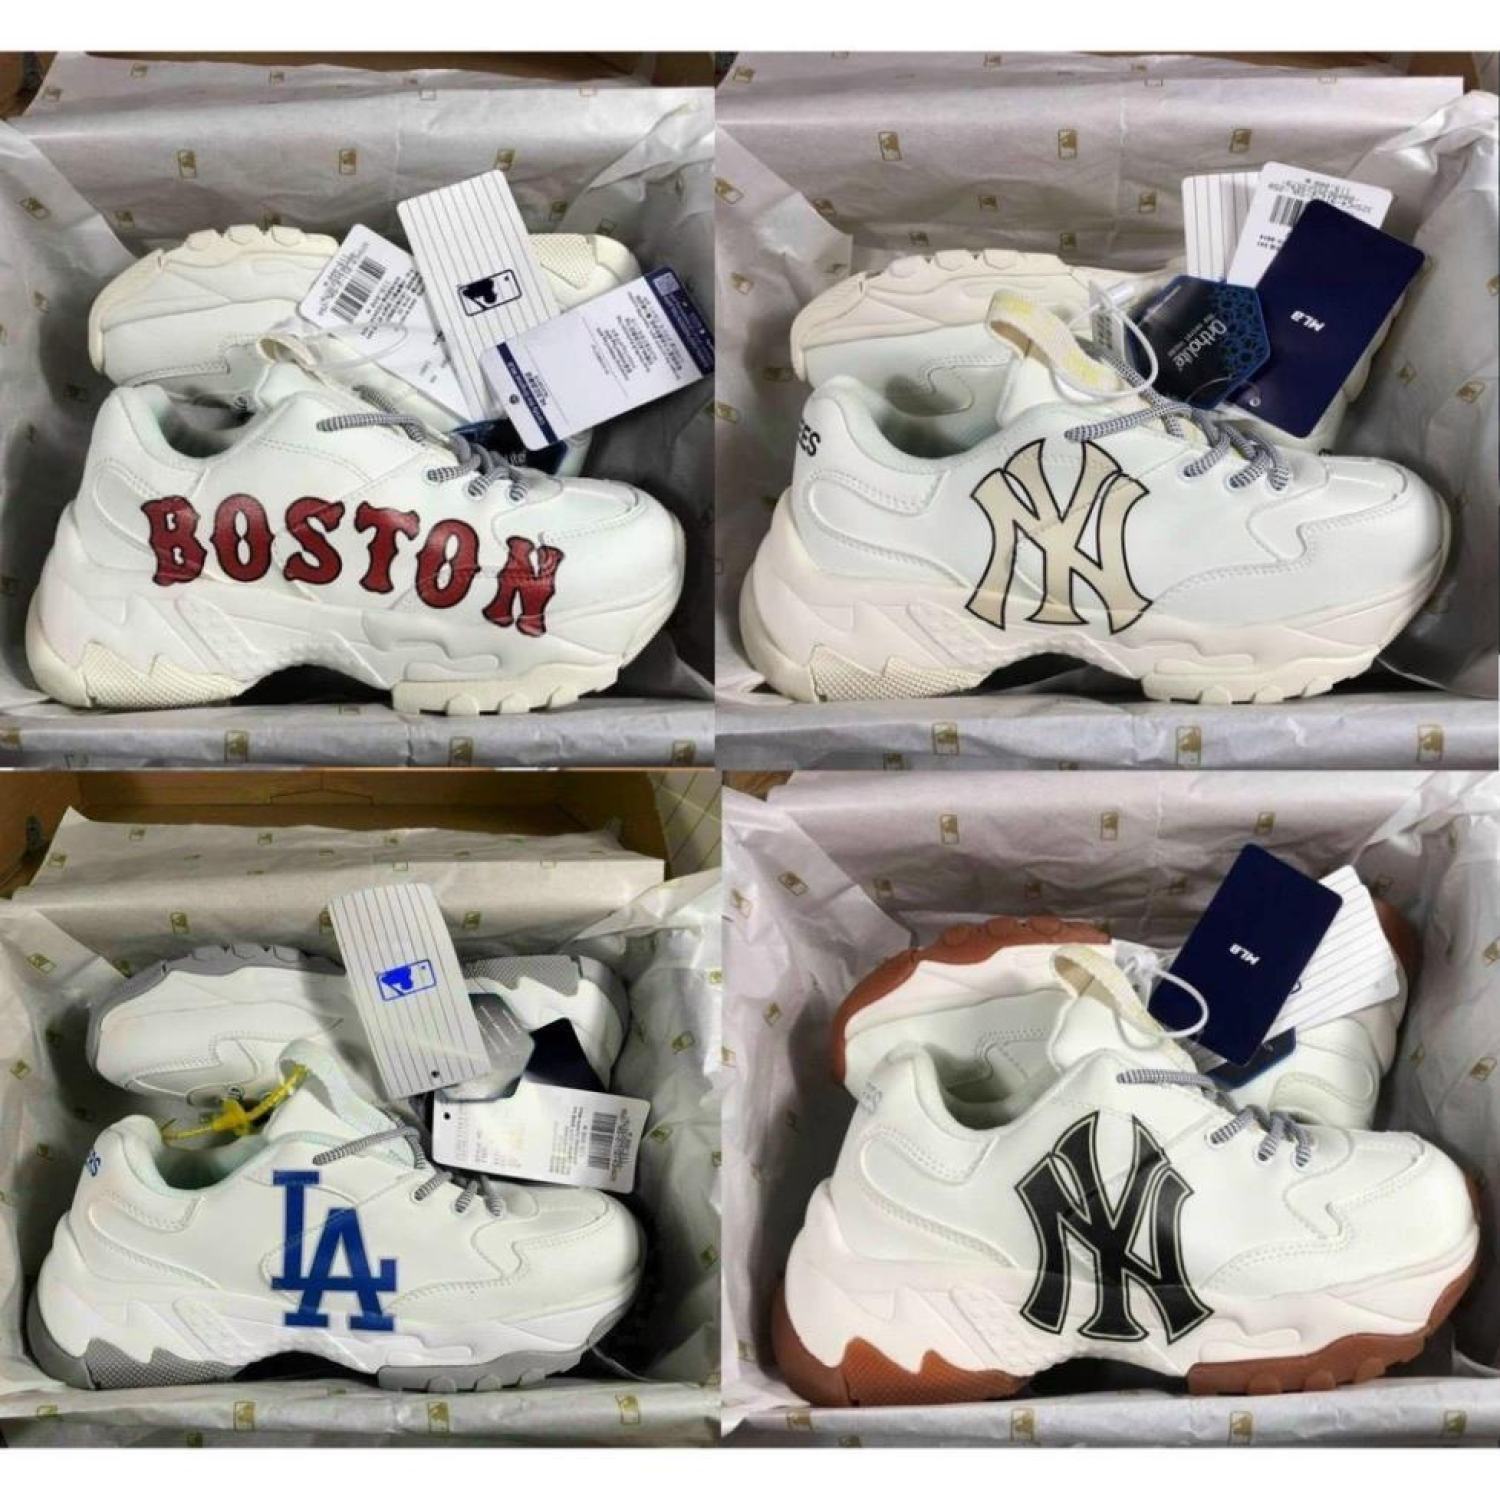 [ SALE ĐẬM ] Giày MLB Boston hót hít, Giày Thể Thao Tăng Chiều Cao MLB Boston, LA, NY bản đẹp thumbnail